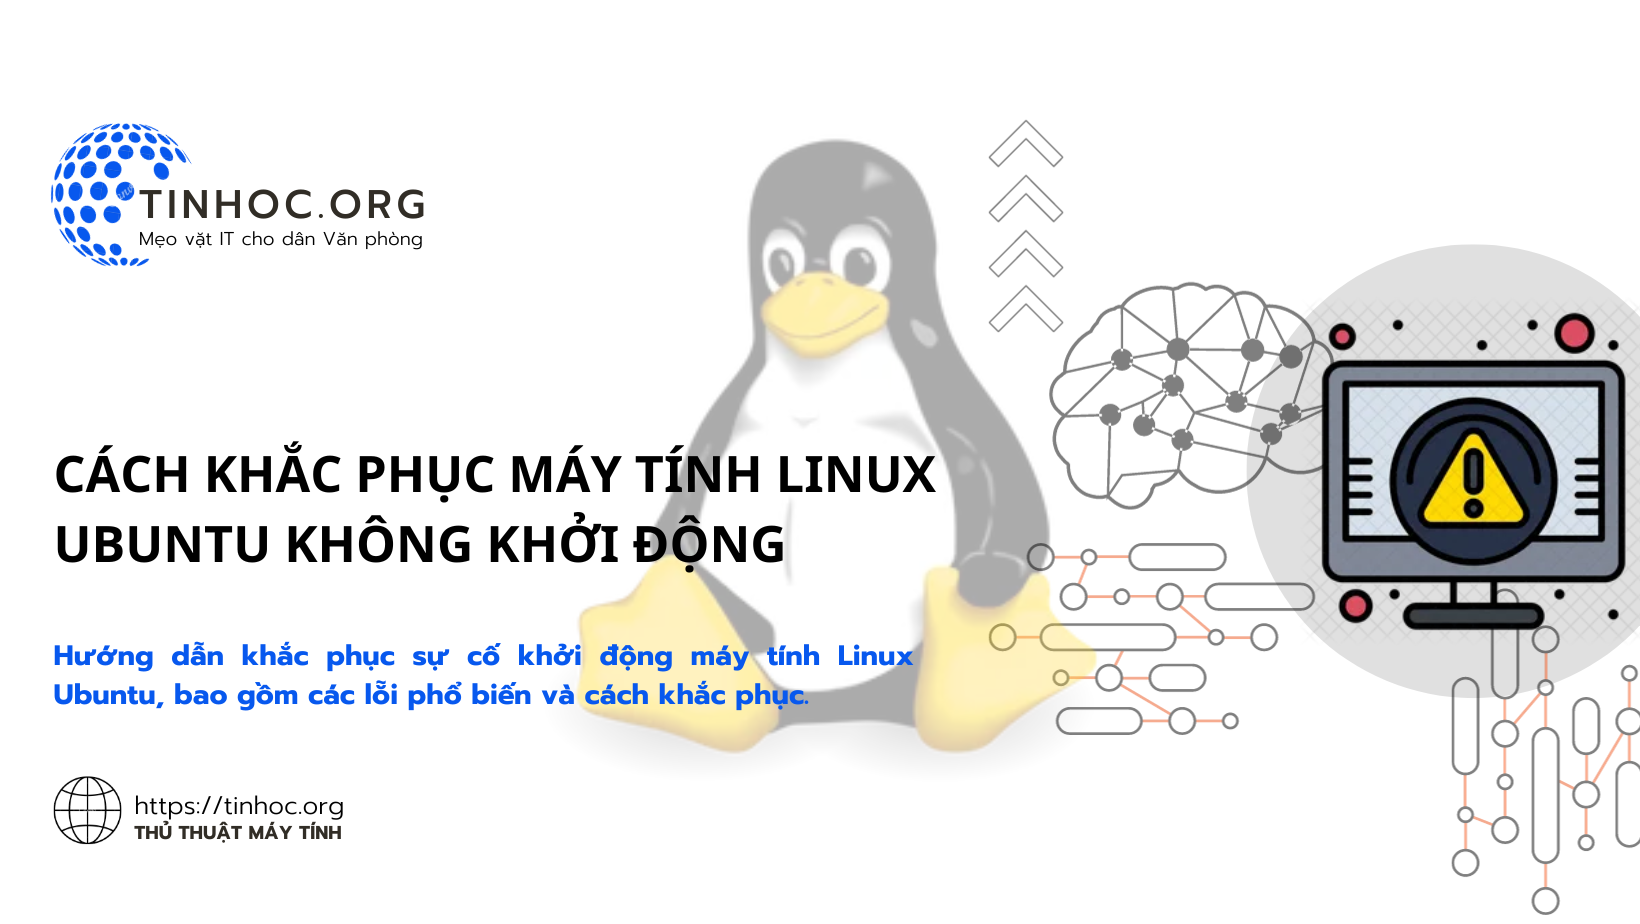 Hướng dẫn khắc phục sự cố khởi động máy tính Linux Ubuntu, bao gồm các lỗi phổ biến và cách khắc phục.